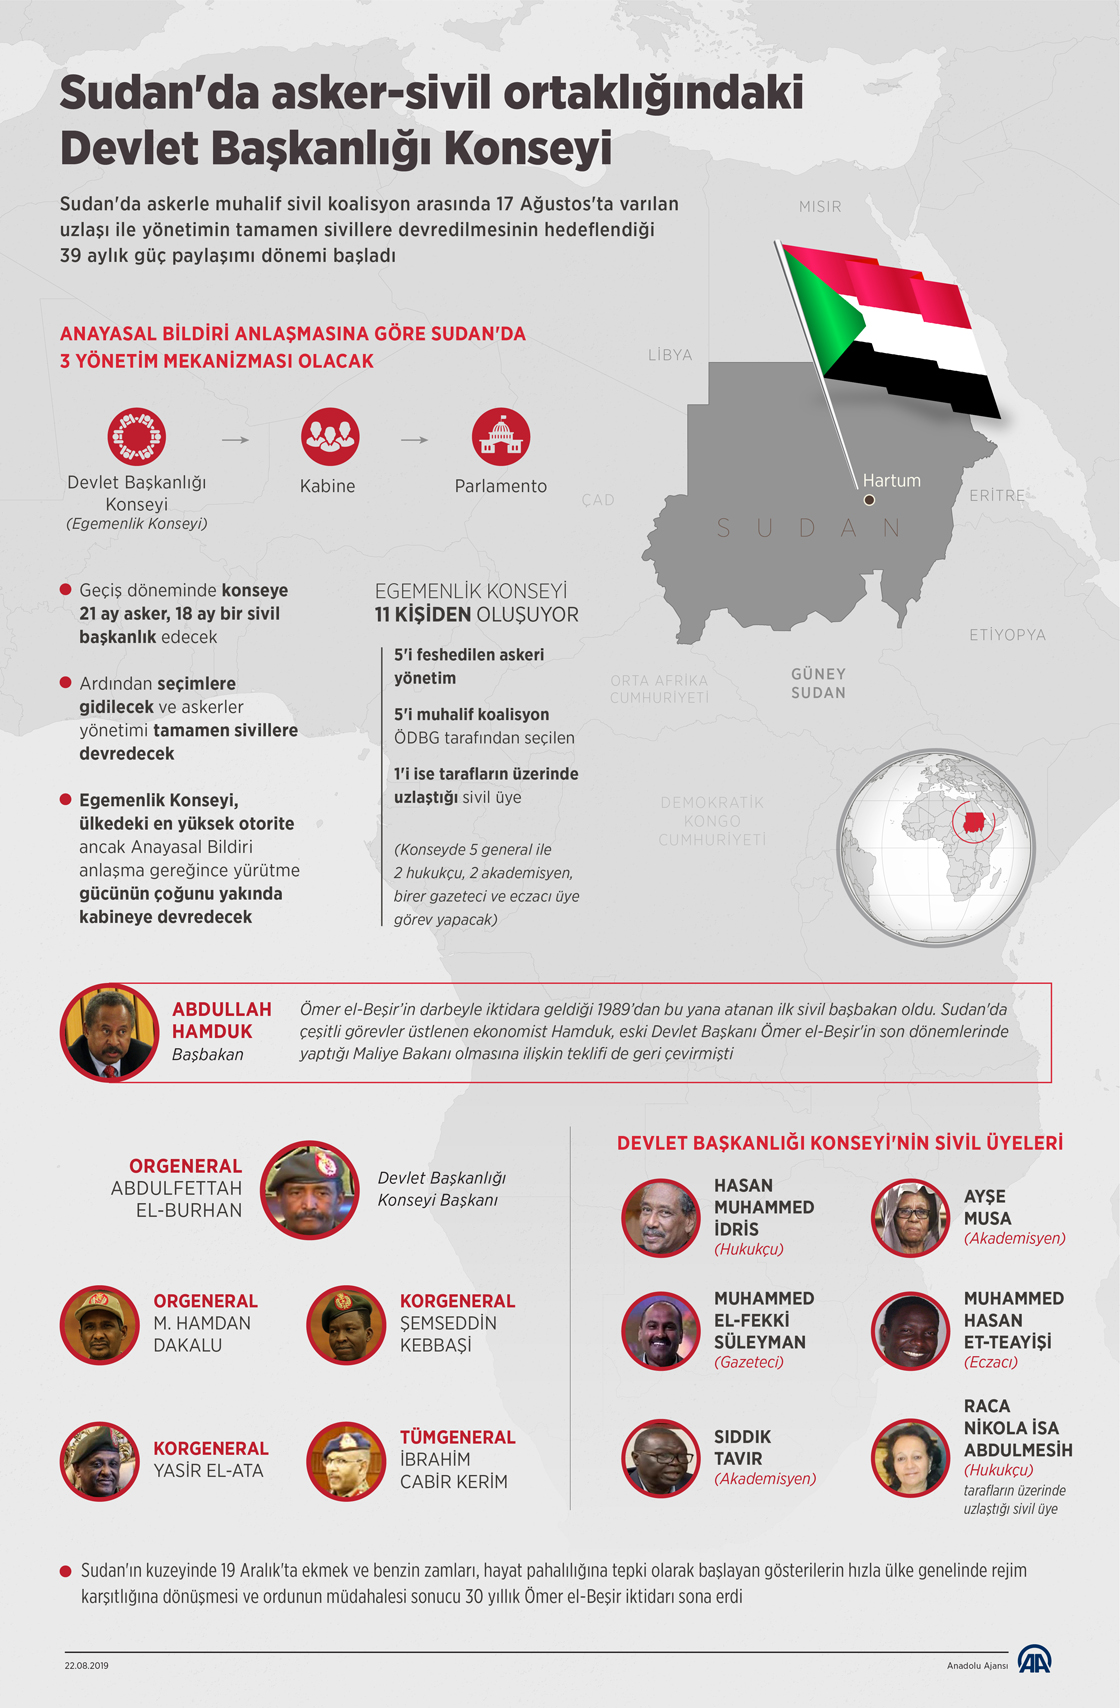 Sudan'da asker-sivil ortaklÄ±ÄÄ±ndaki Devlet BaÅkanlÄ±ÄÄ± Konseyi